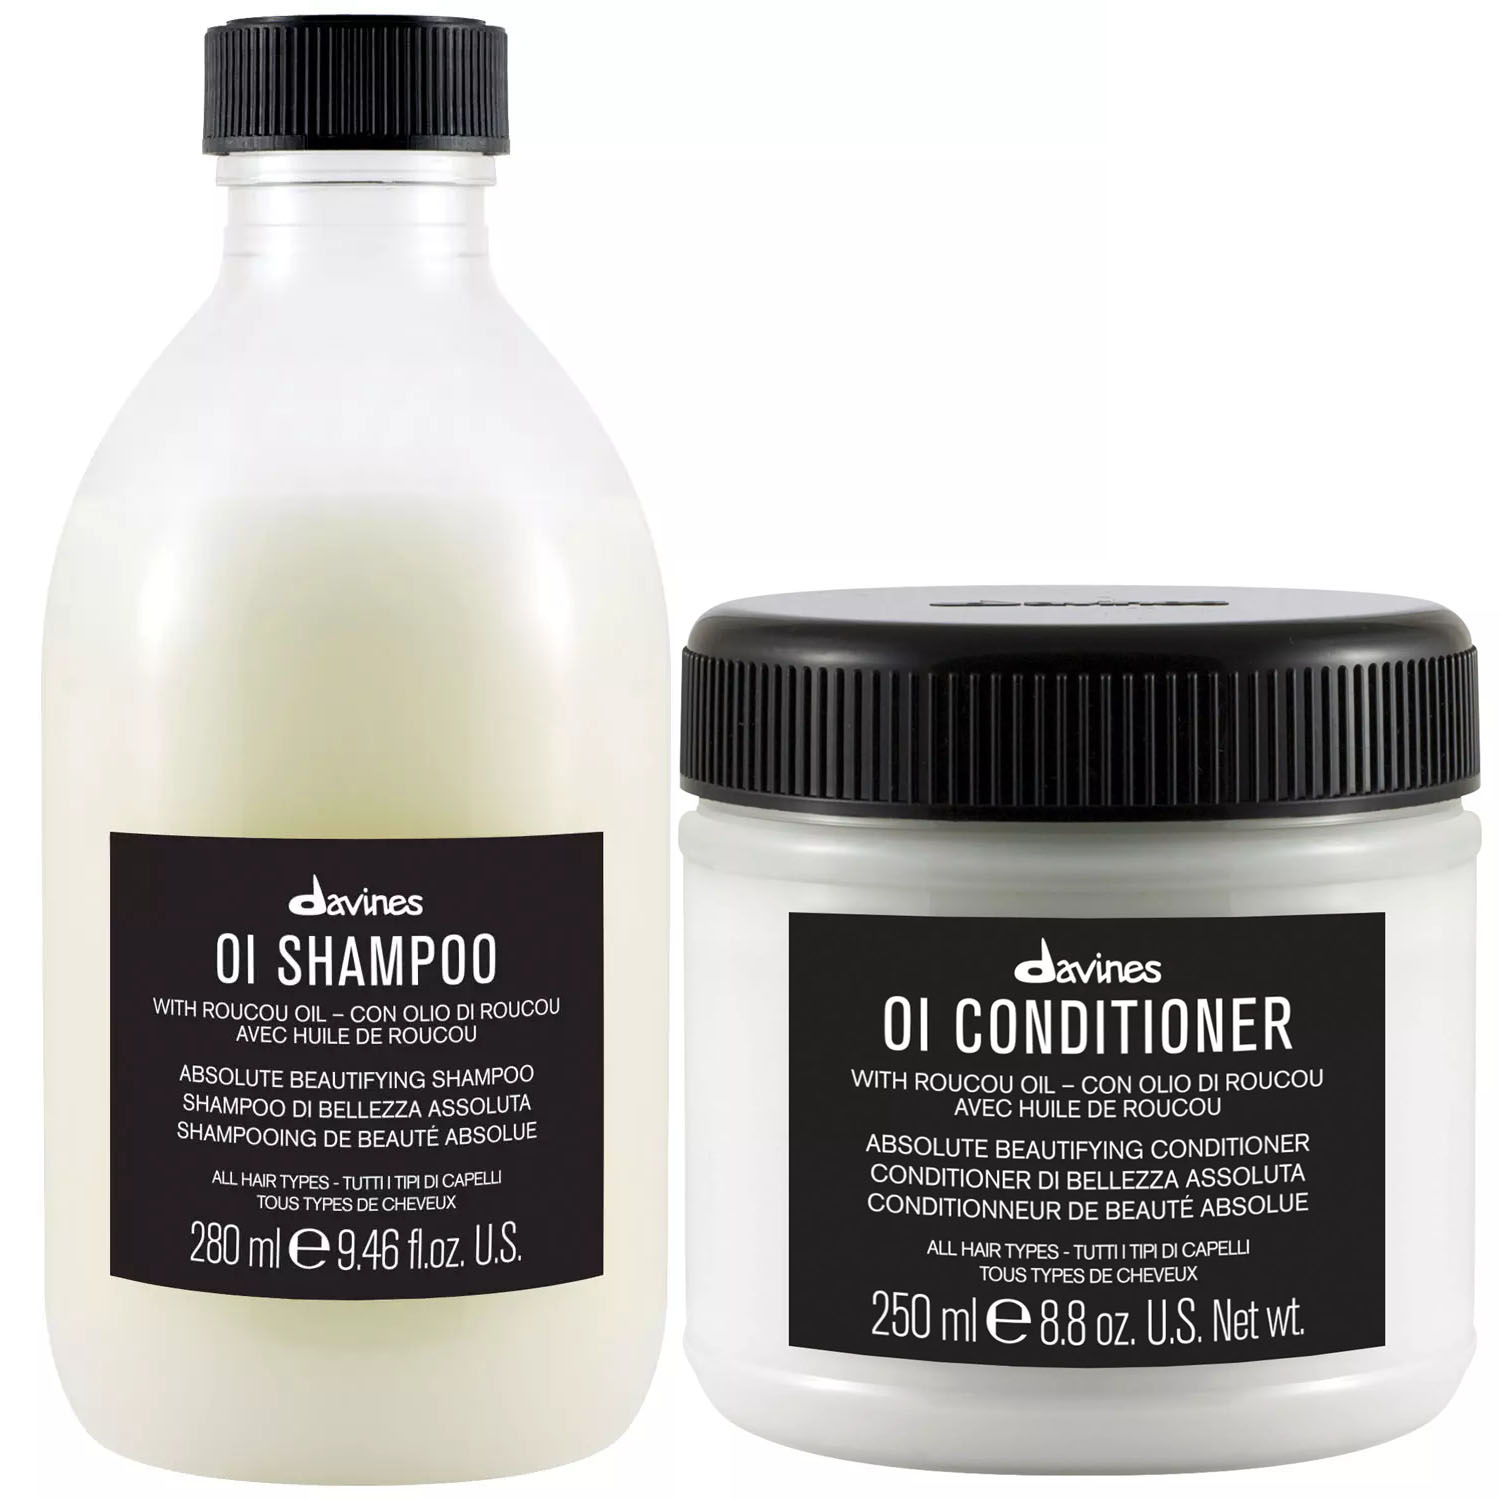 Davines Набор для абсолютной красоты волос: шампунь 280 мл + кондиционер 250 мл (Davines, OI) цена и фото